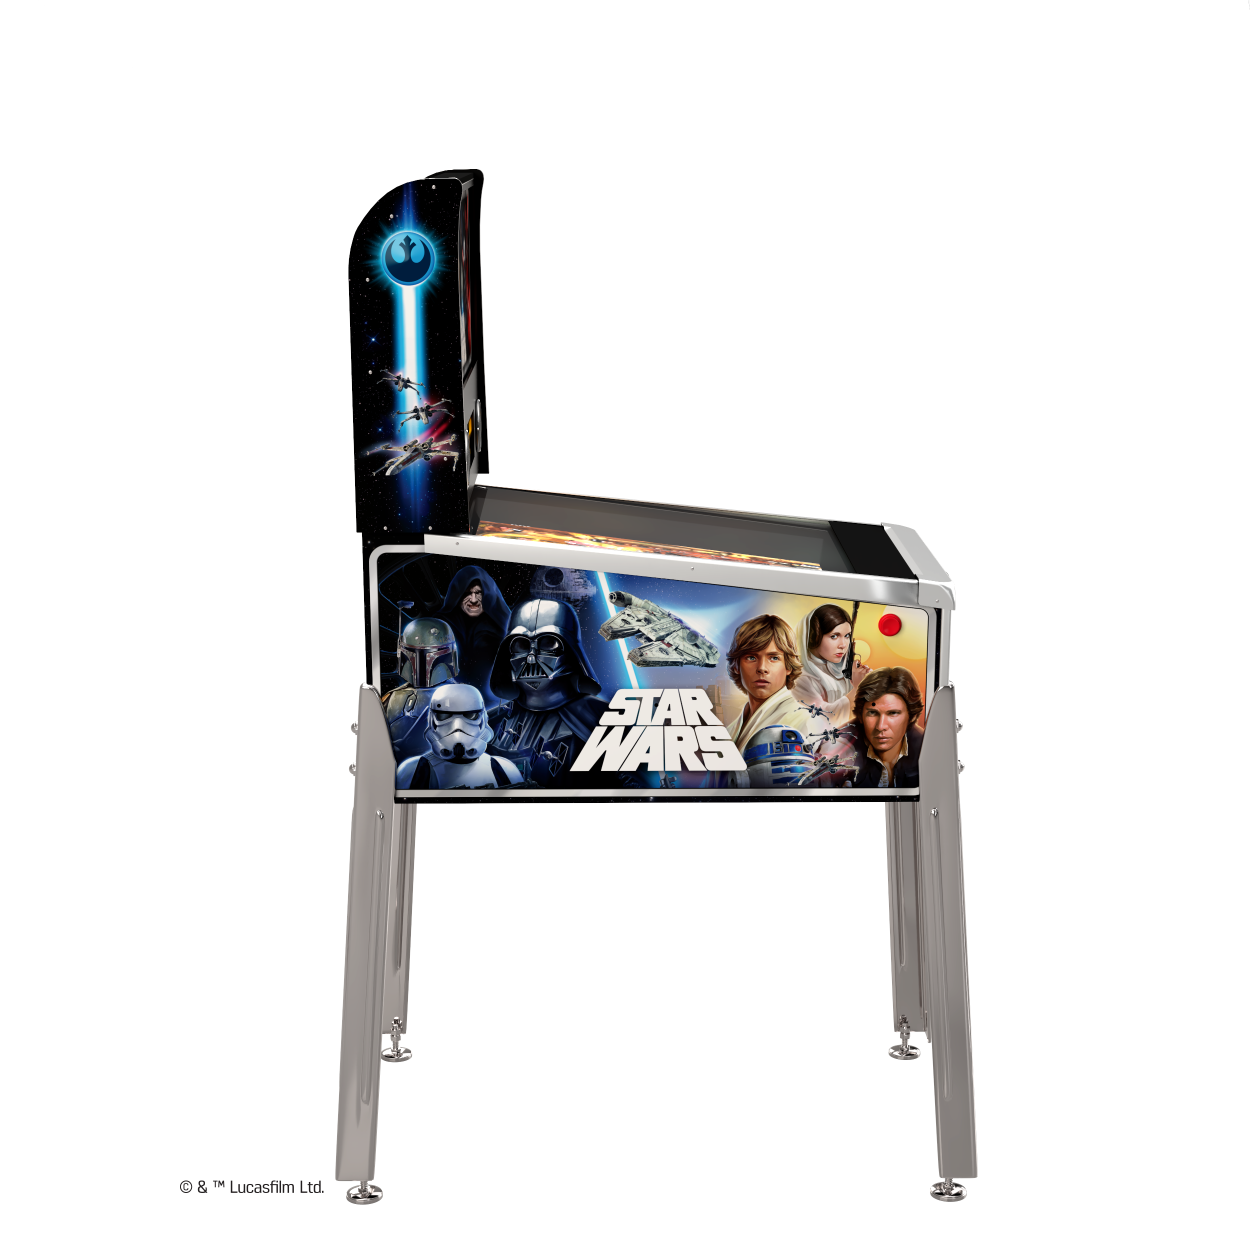 Star Wars pinball machine artwork